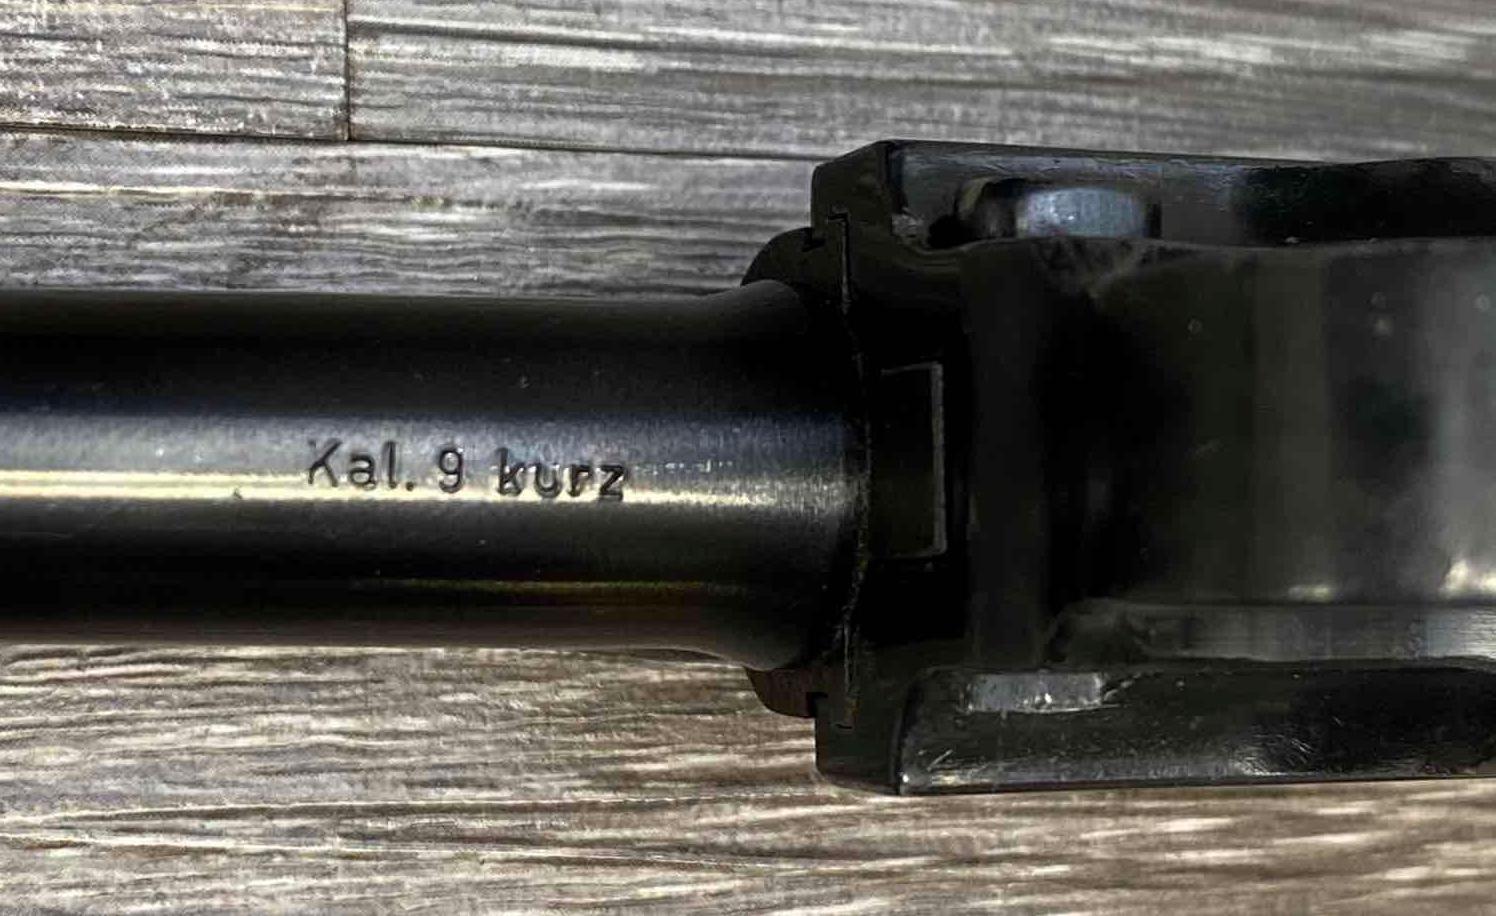 ERMA-WERKE MODEL KGP-68A BABY LUGER 9mm KURZ/.380 ACP SEMI-AUTO PISTOL